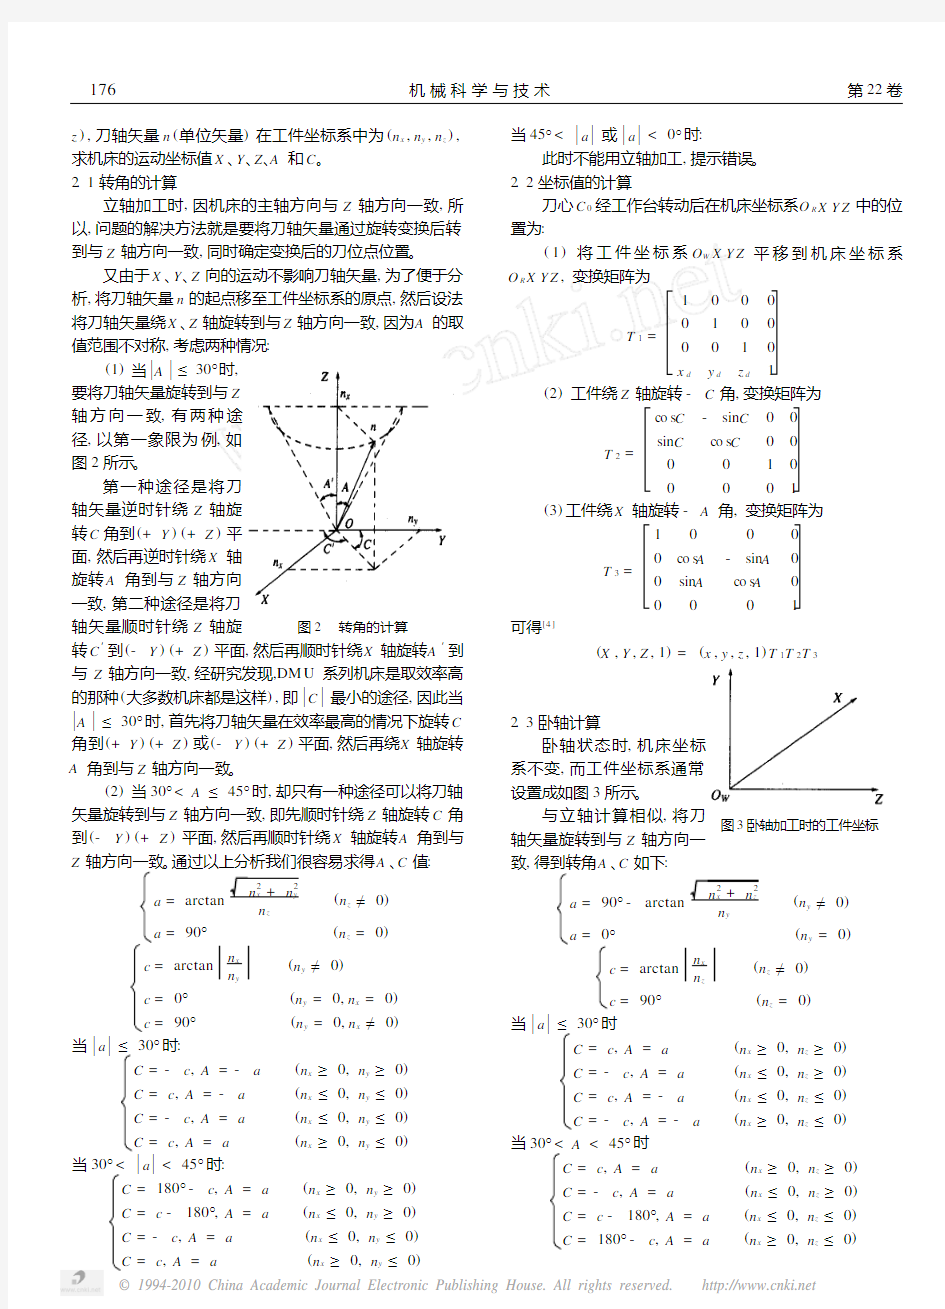 五轴联动数控机床的后置处理方法_胡寅亮 (1)